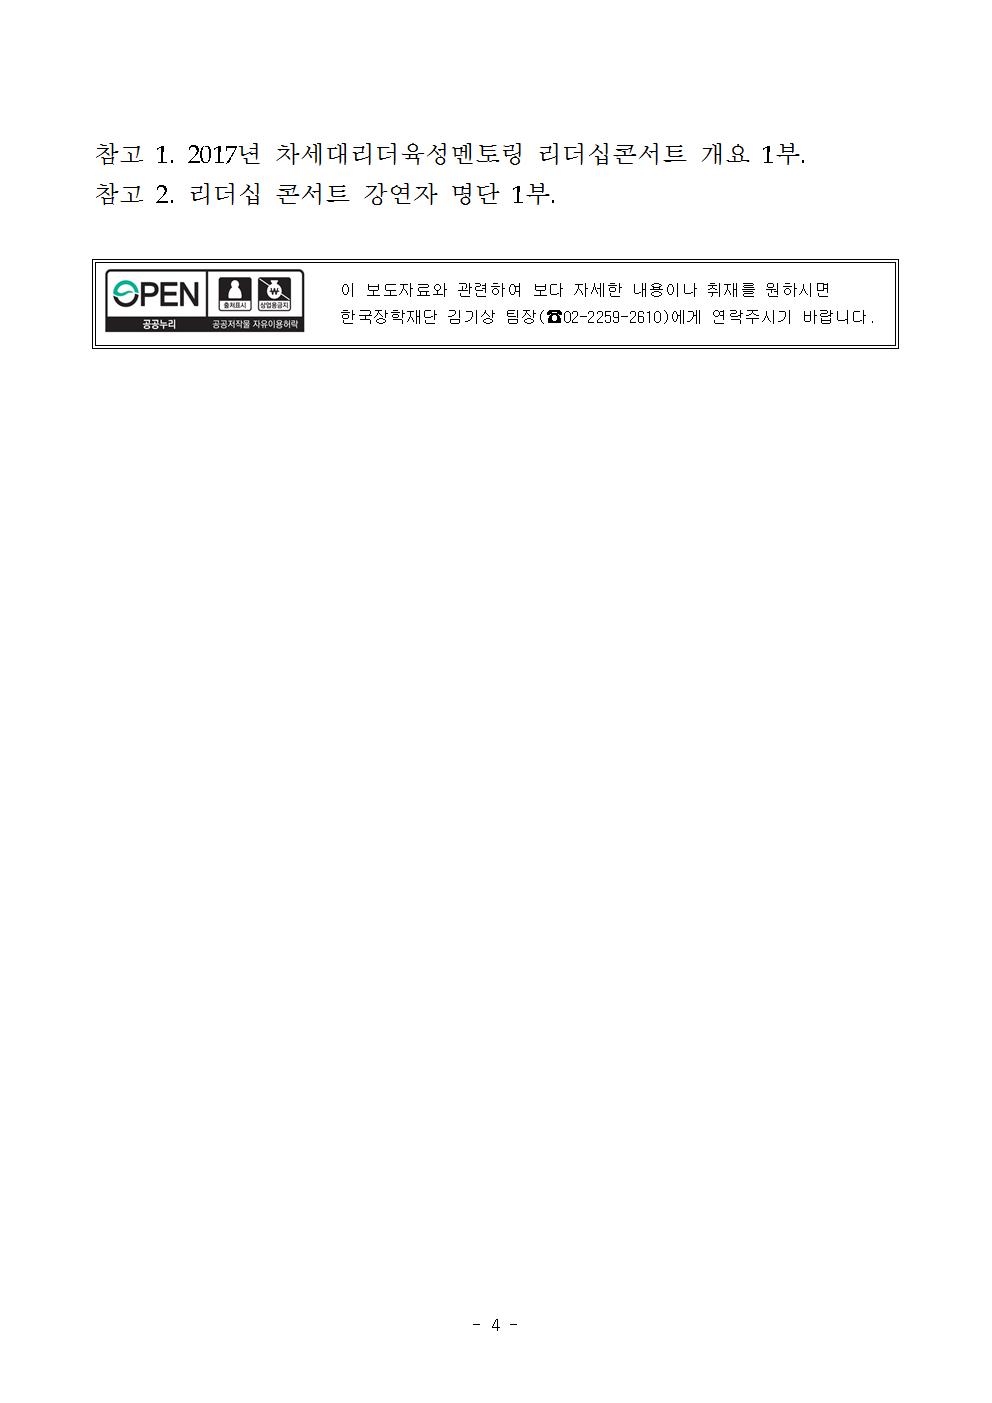 09-23(토)[보도자료] 2017년 차세대리더육성멘토링 리더십콘서트 개최004.jpg